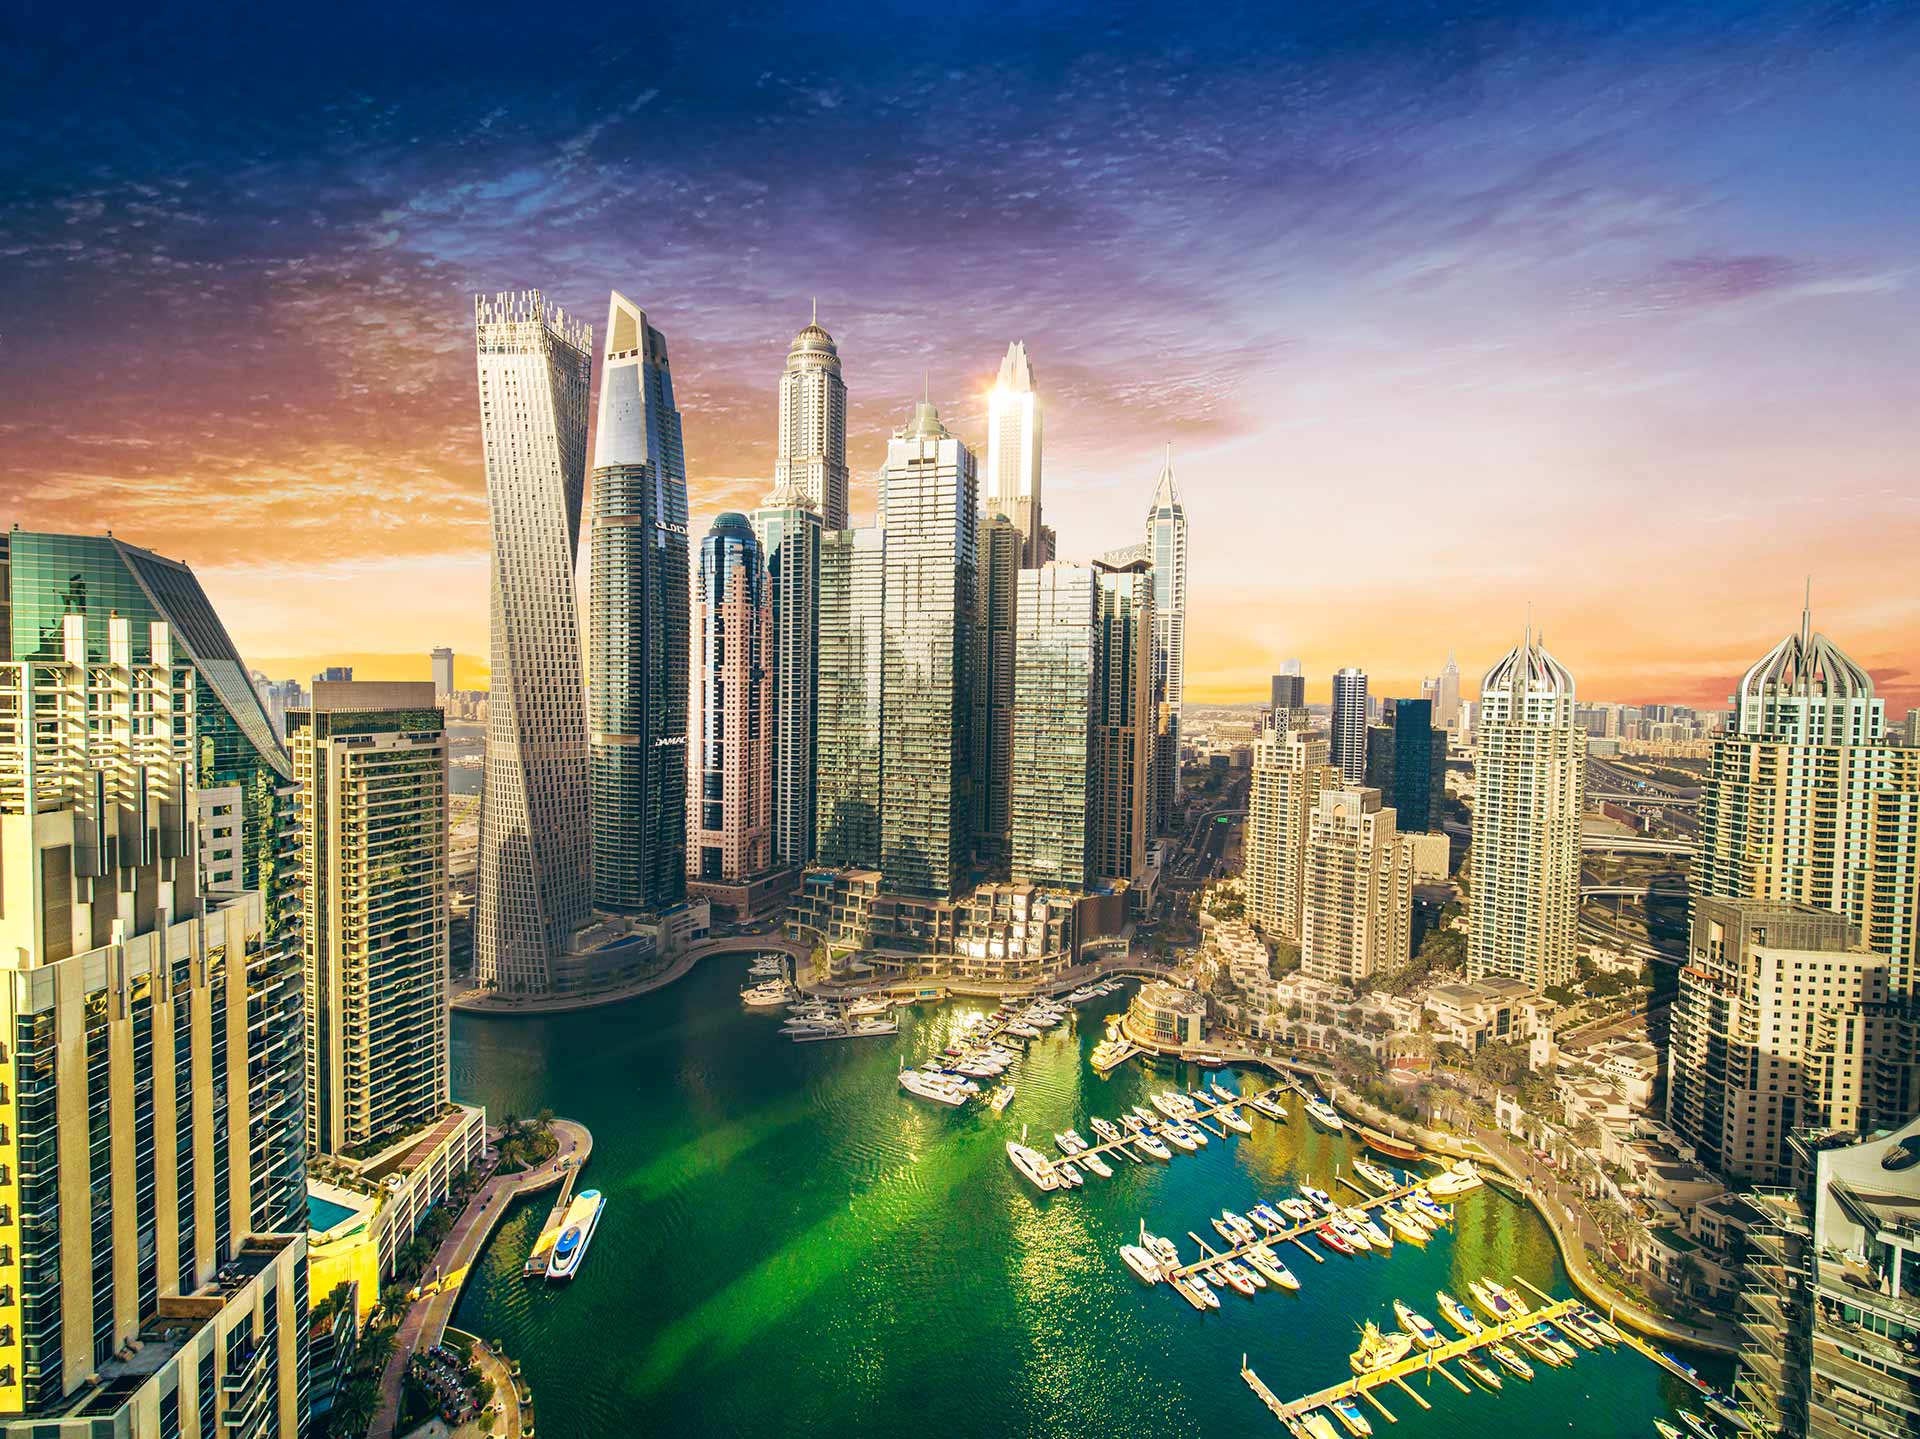 Das Foto zeigt die Dubai Marina bei Sonnenuntergang, mit markanten Wolkenkratzern wie dem Cayan Tower und dem Yachthafen im Vordergrund.